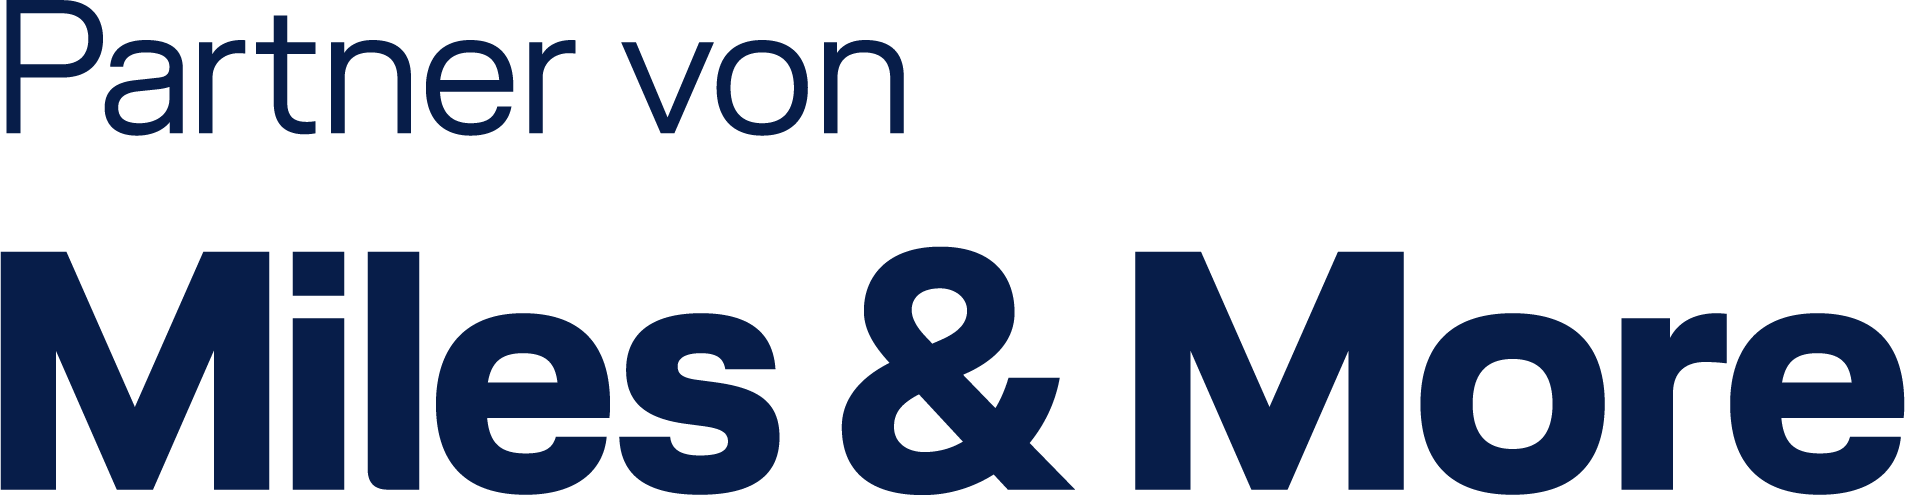 Partner von Miles & More Logo